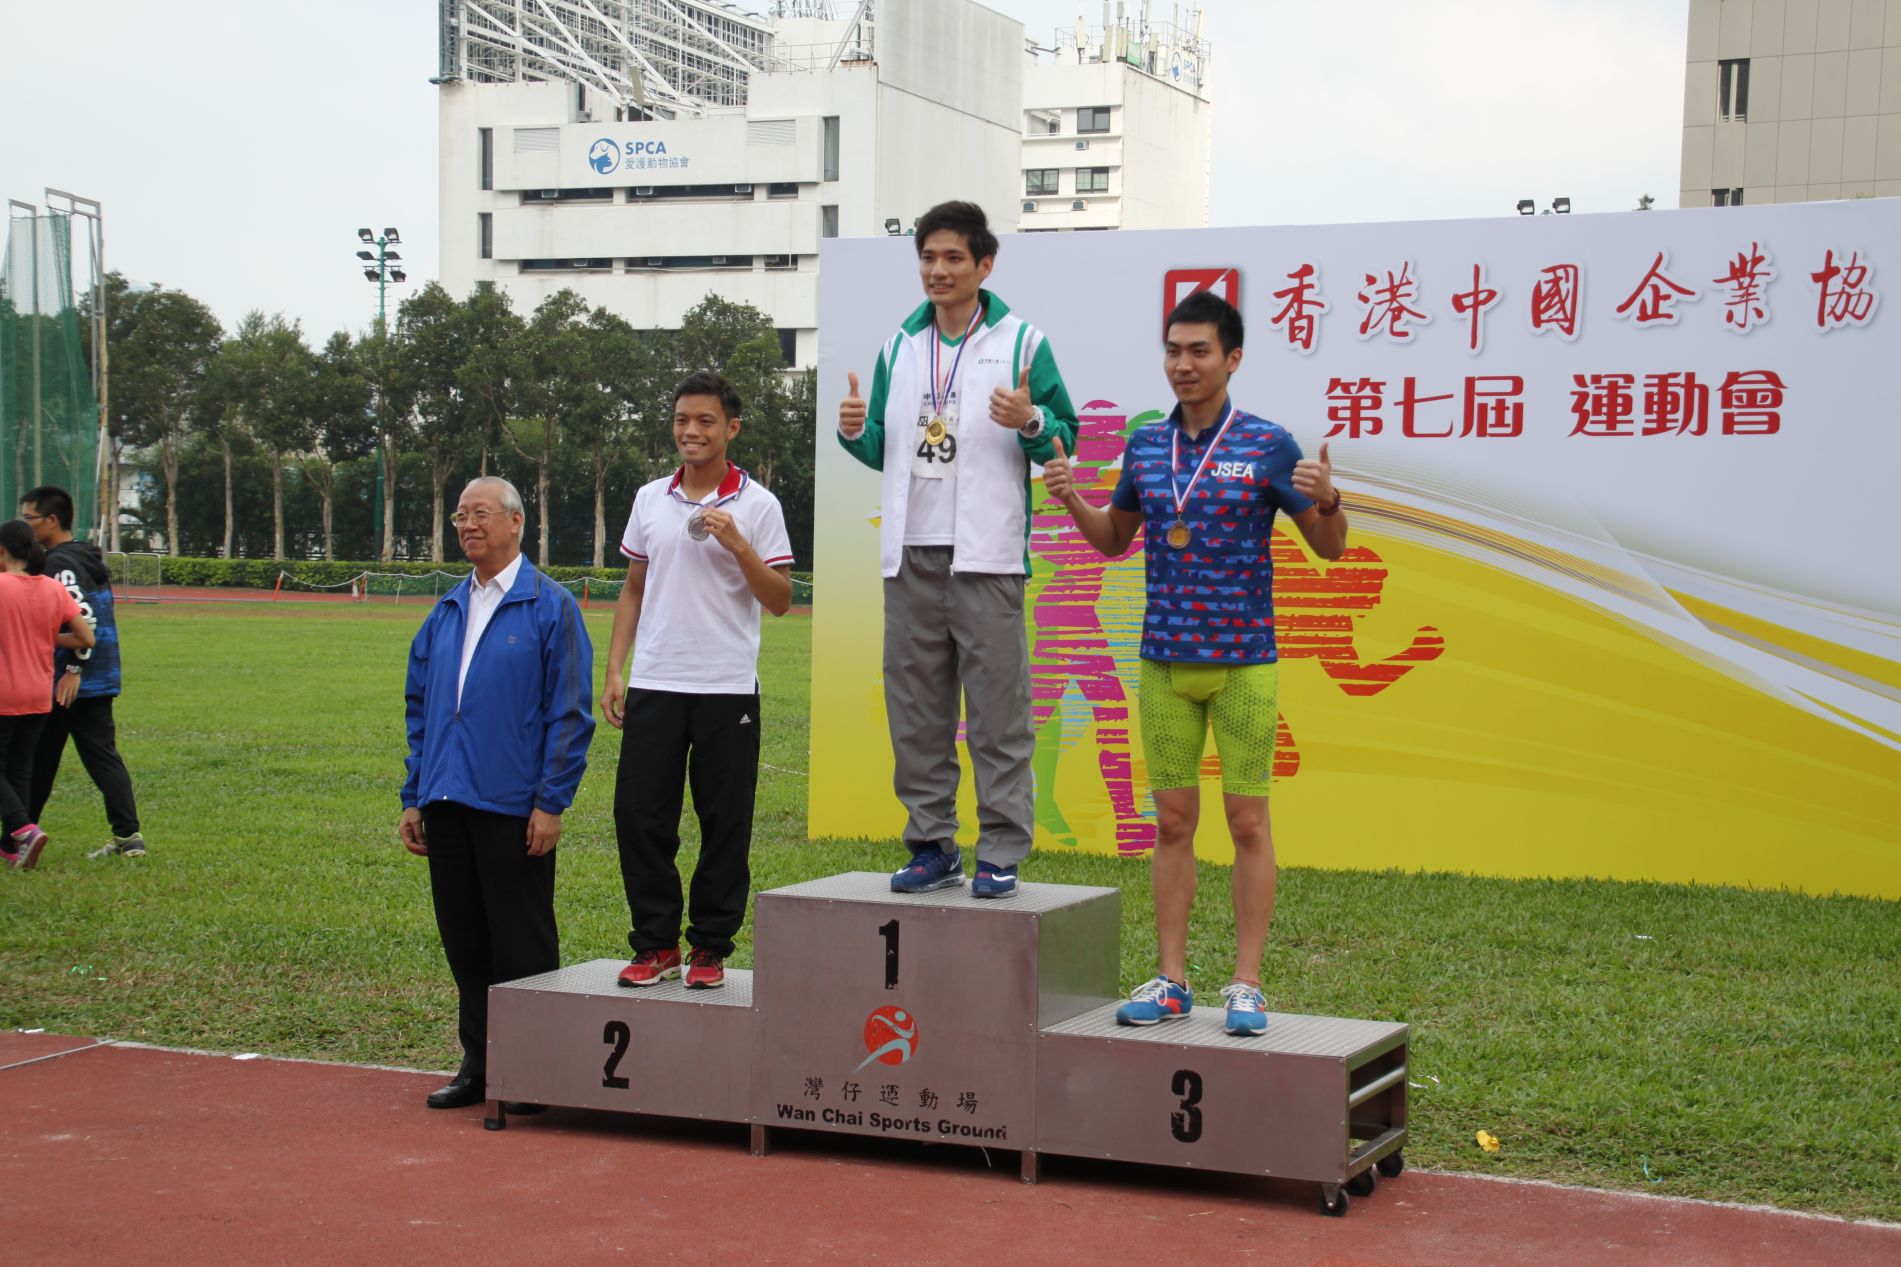 得奖同事 : 林楚栩 (夺得男子A组 400米冠军奖)